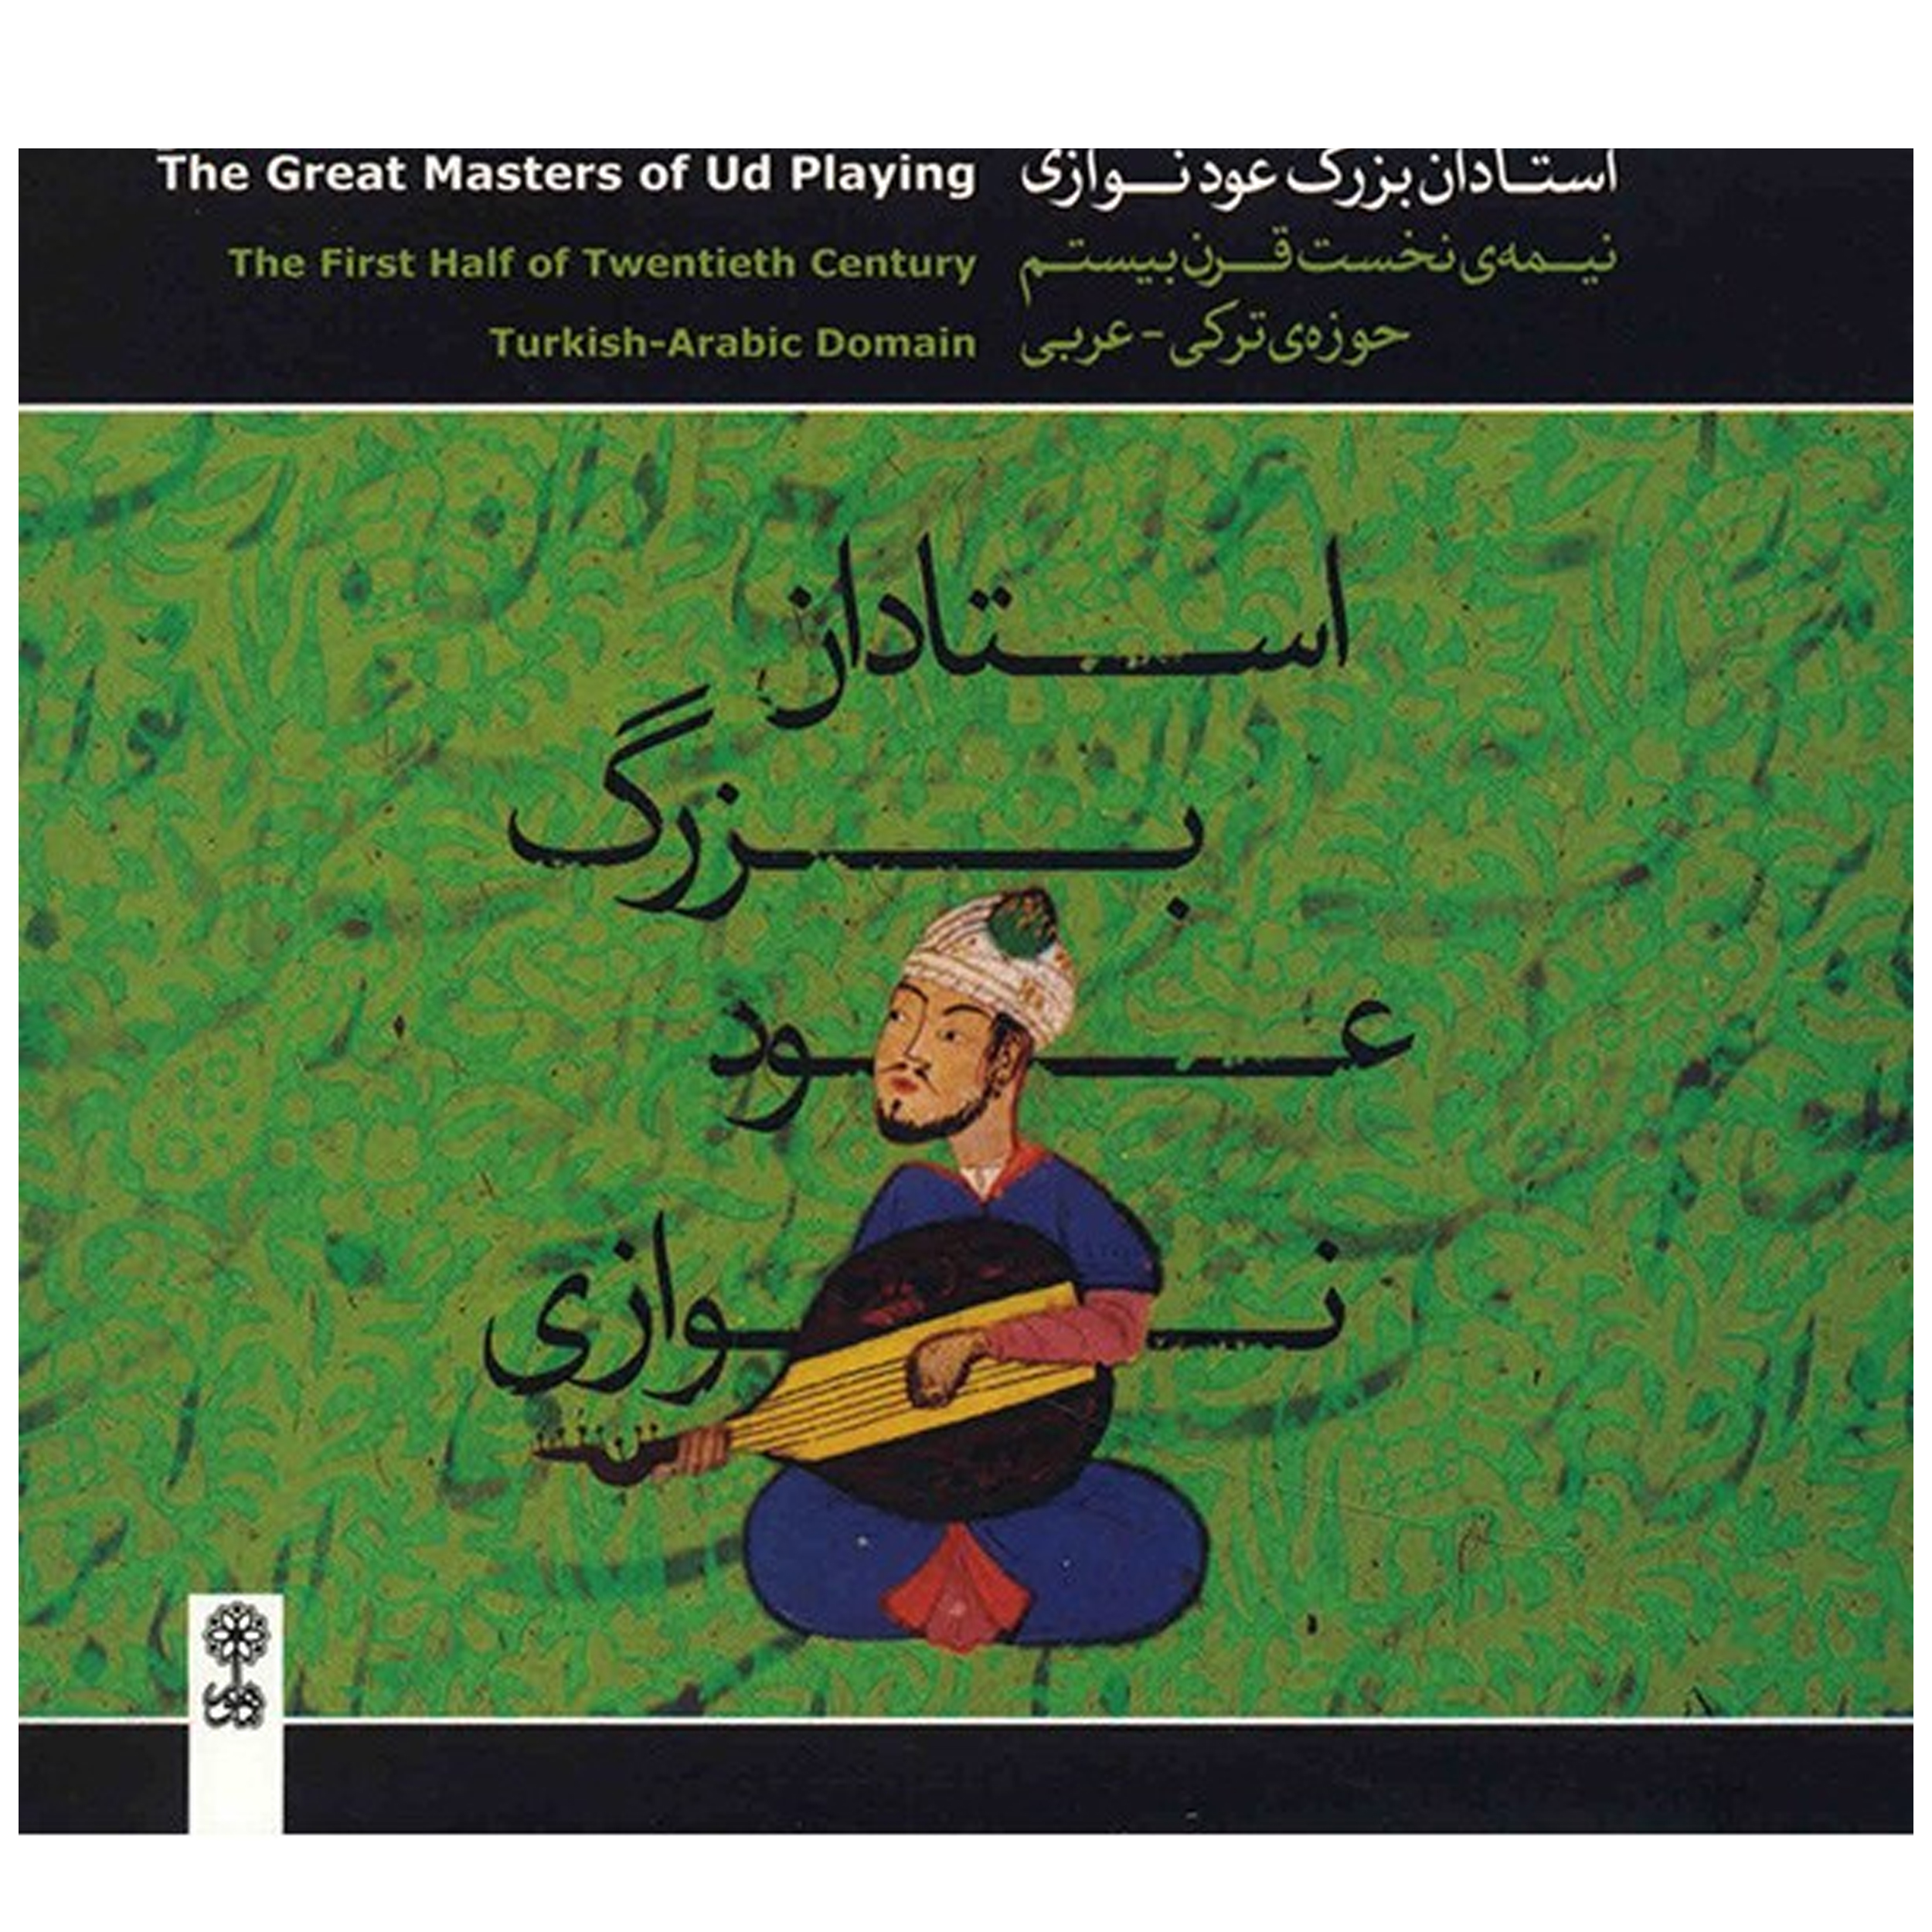 آلبوم موسیقی استادان بزرگ عود نوازی نیمه نخست قرن بیستم (حوزه ی ترکی - عربی)